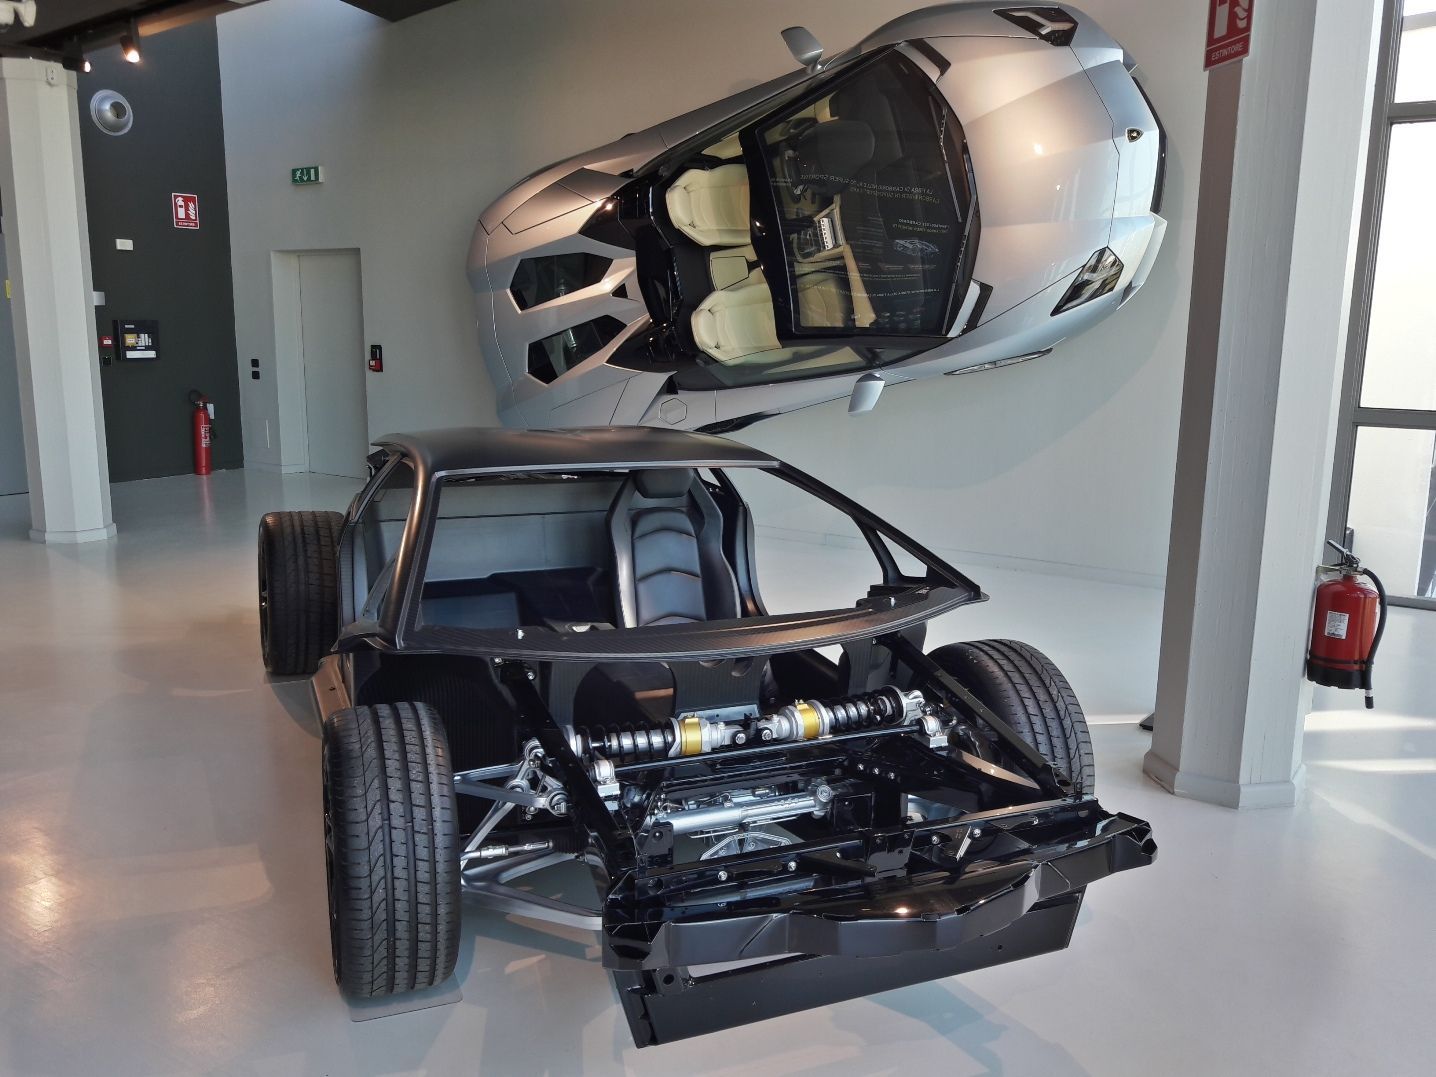 muzeum Lamborghini